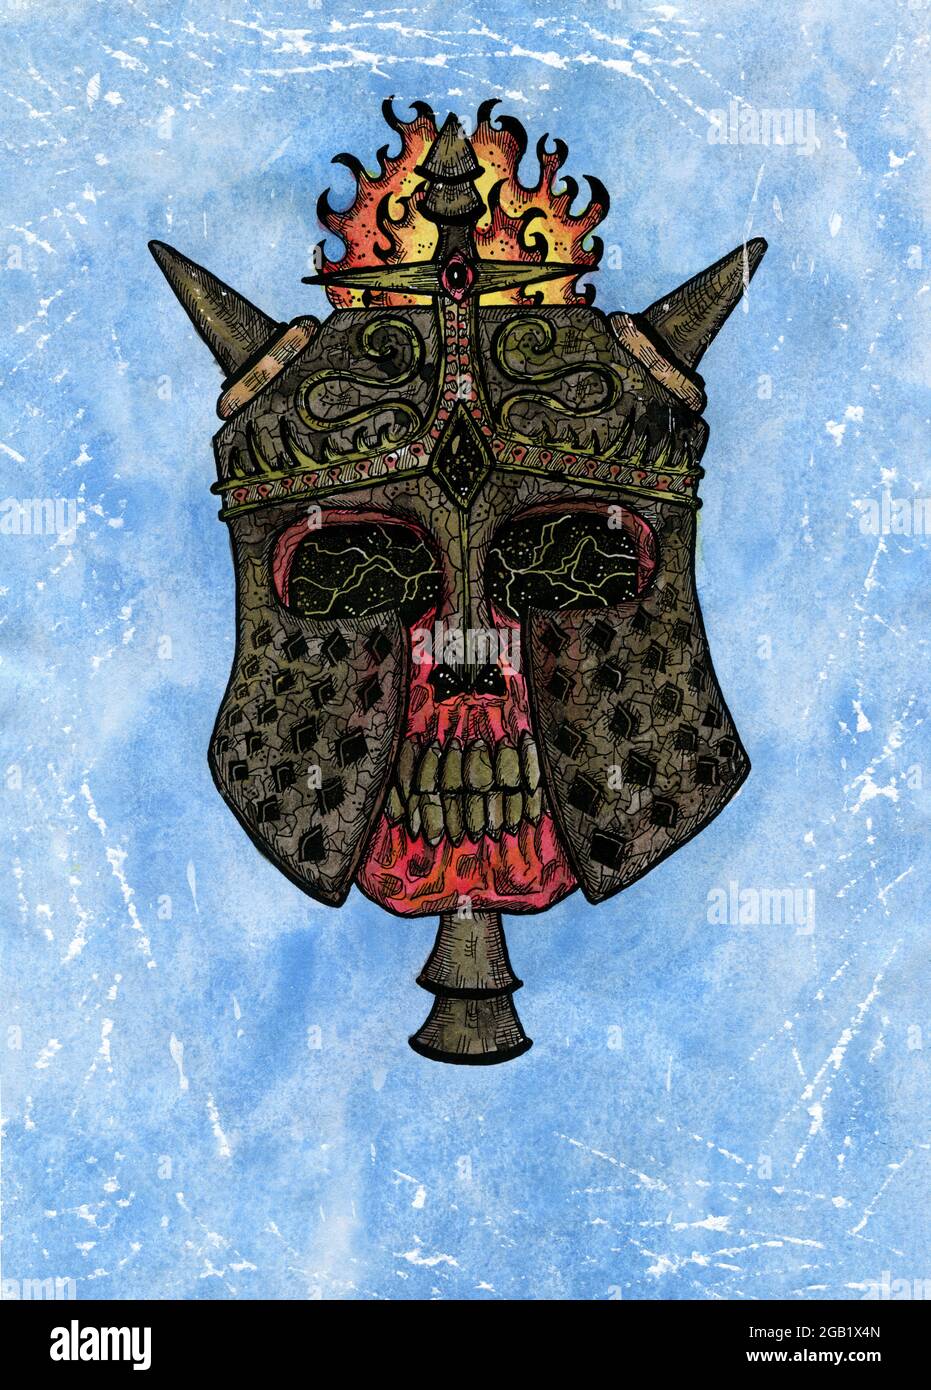 Grunge Aquarell Illustration von gruseligen Schädel als Ritter in Helm auf blauem Hintergrund. Mystische Zeichnung für Halloween mit esoterischer, gotischer, okkulter Stockfoto